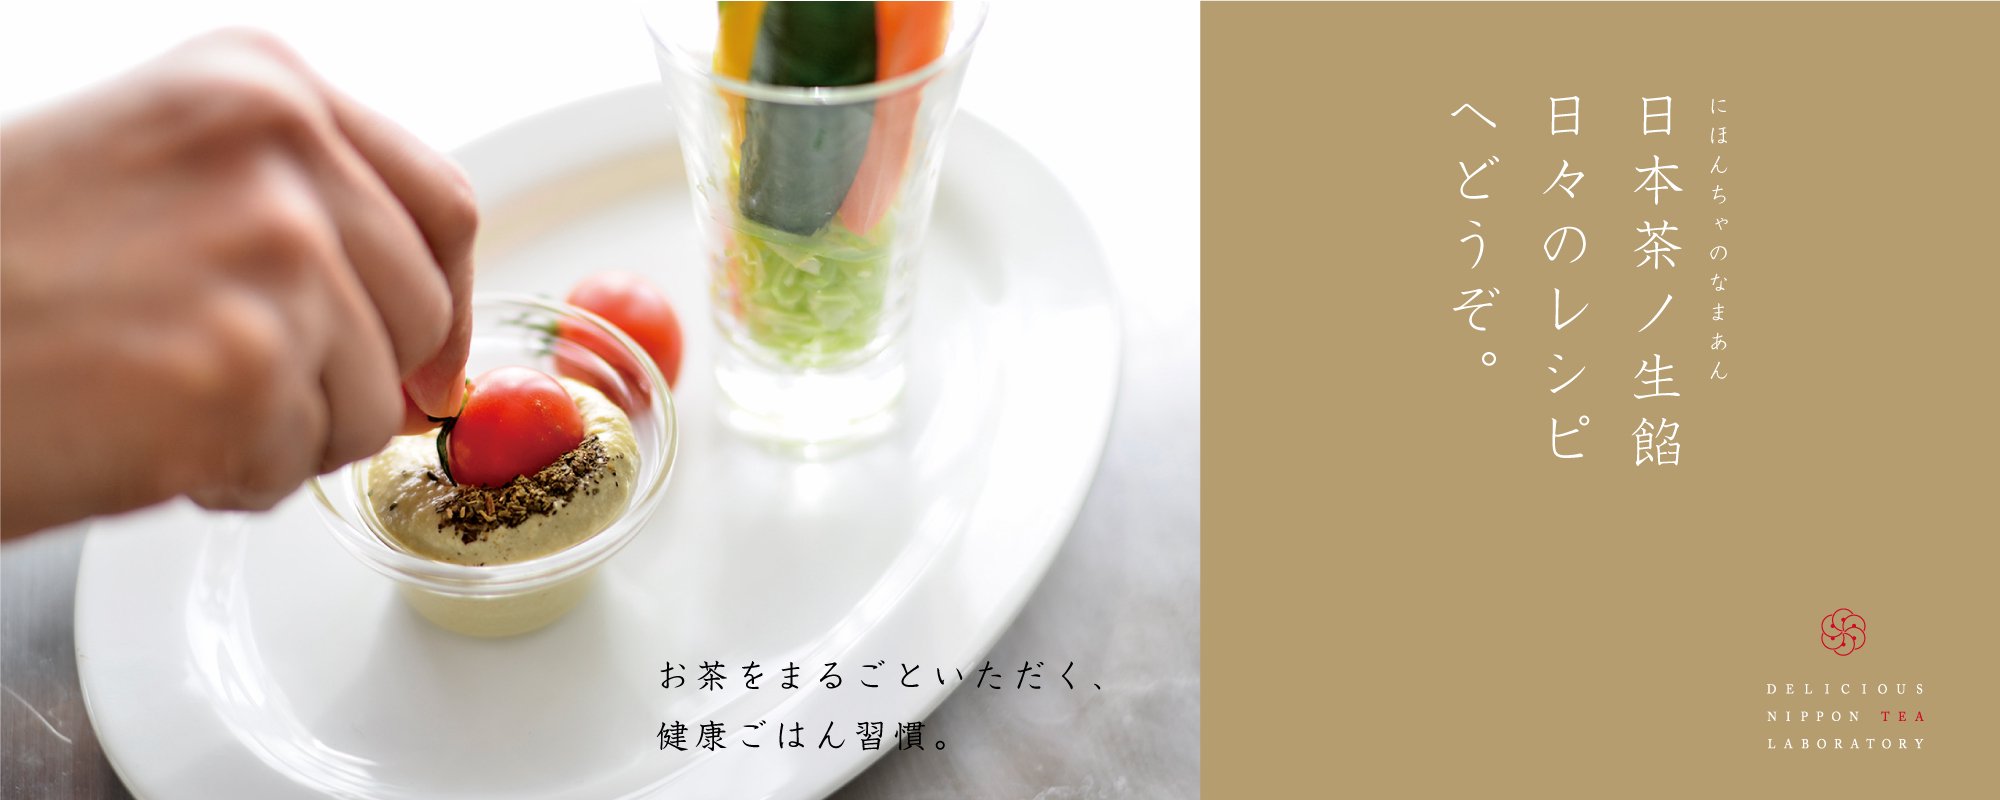 日本茶ノ生餡を使った健康ごはん「日々のレシピ」おいしい日本茶研究所